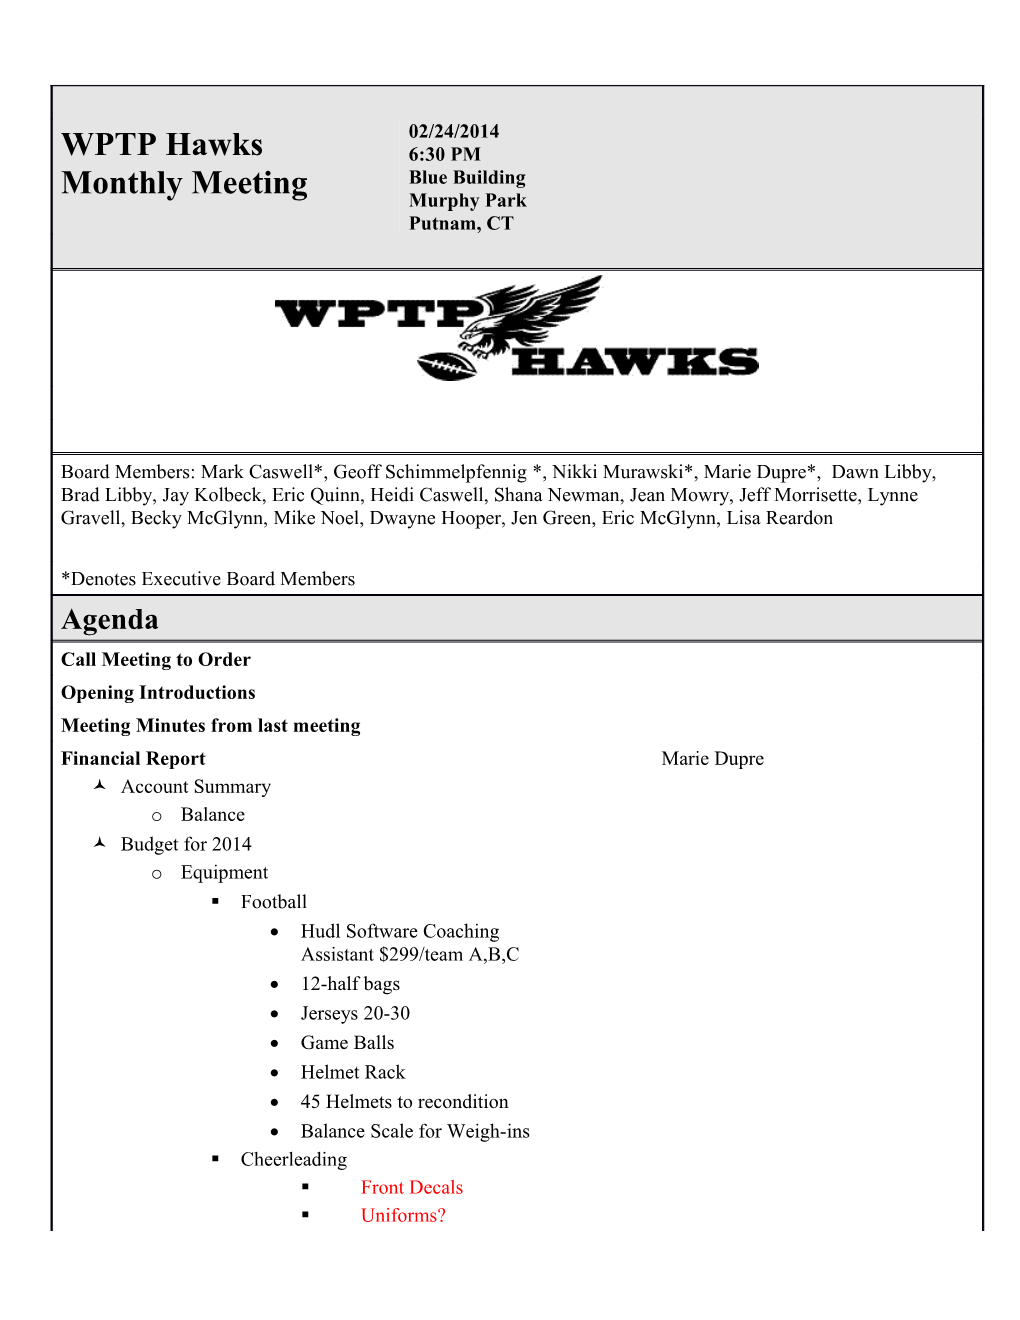 WPTP Hawks Monthly Meeting